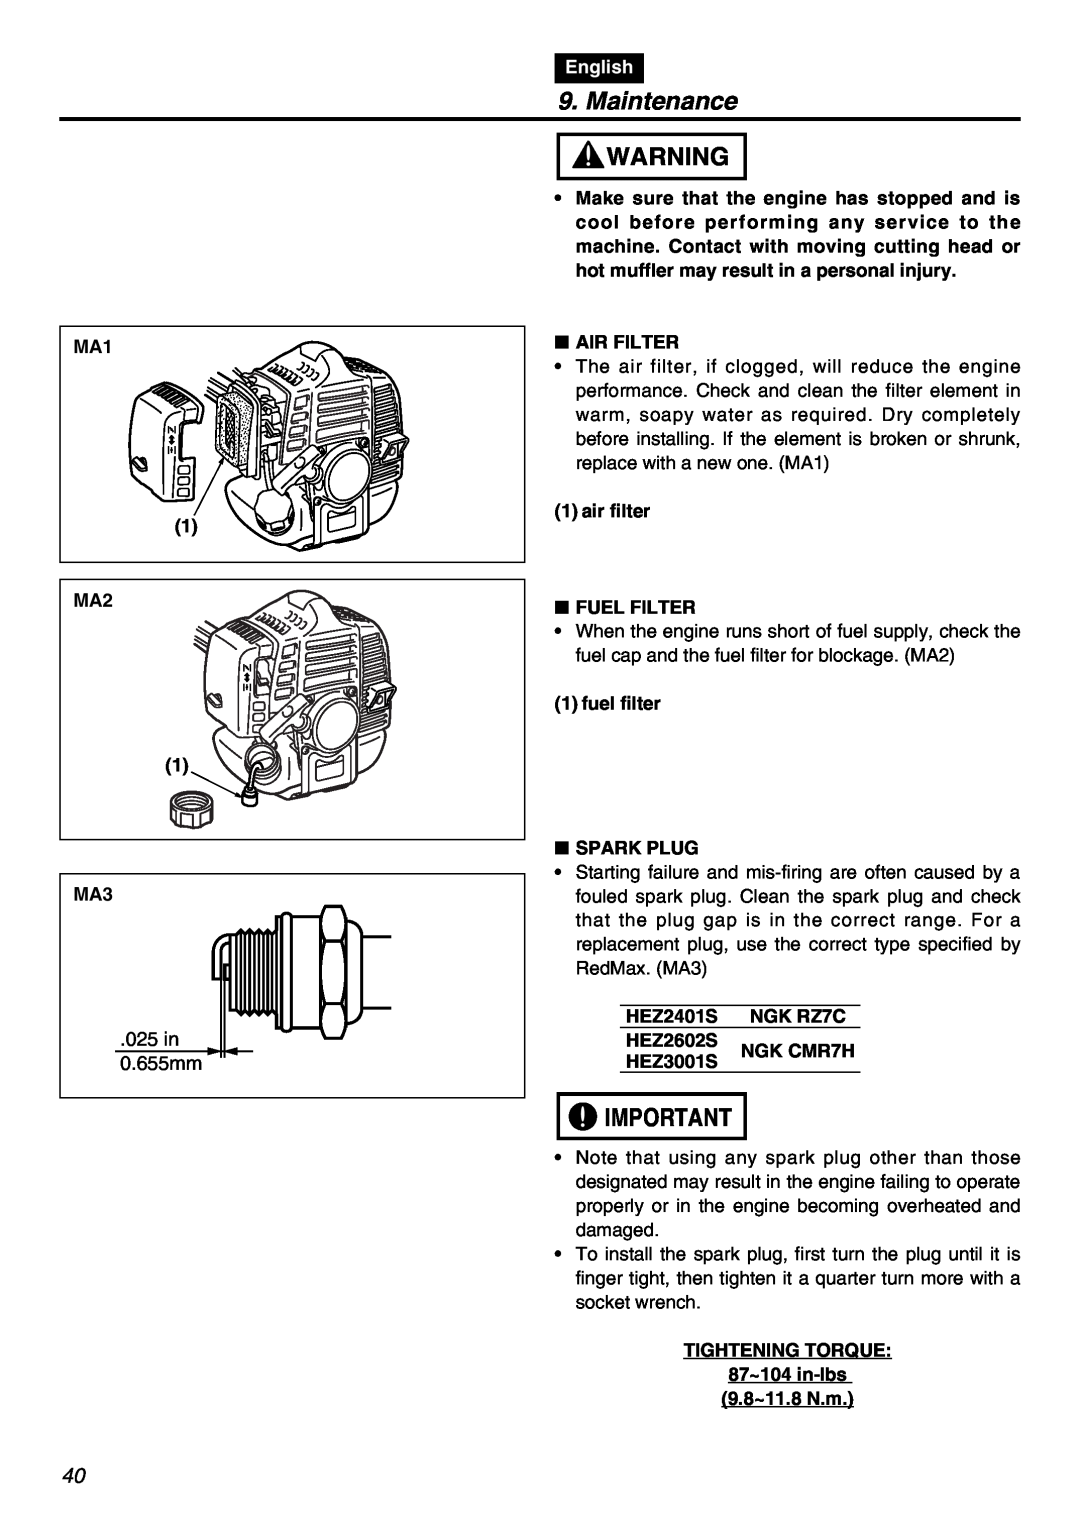 RedMax HEZ2602S, HEZ3001S, HEZ2401S manual 025 in 0.655mm, Maintenance, English 